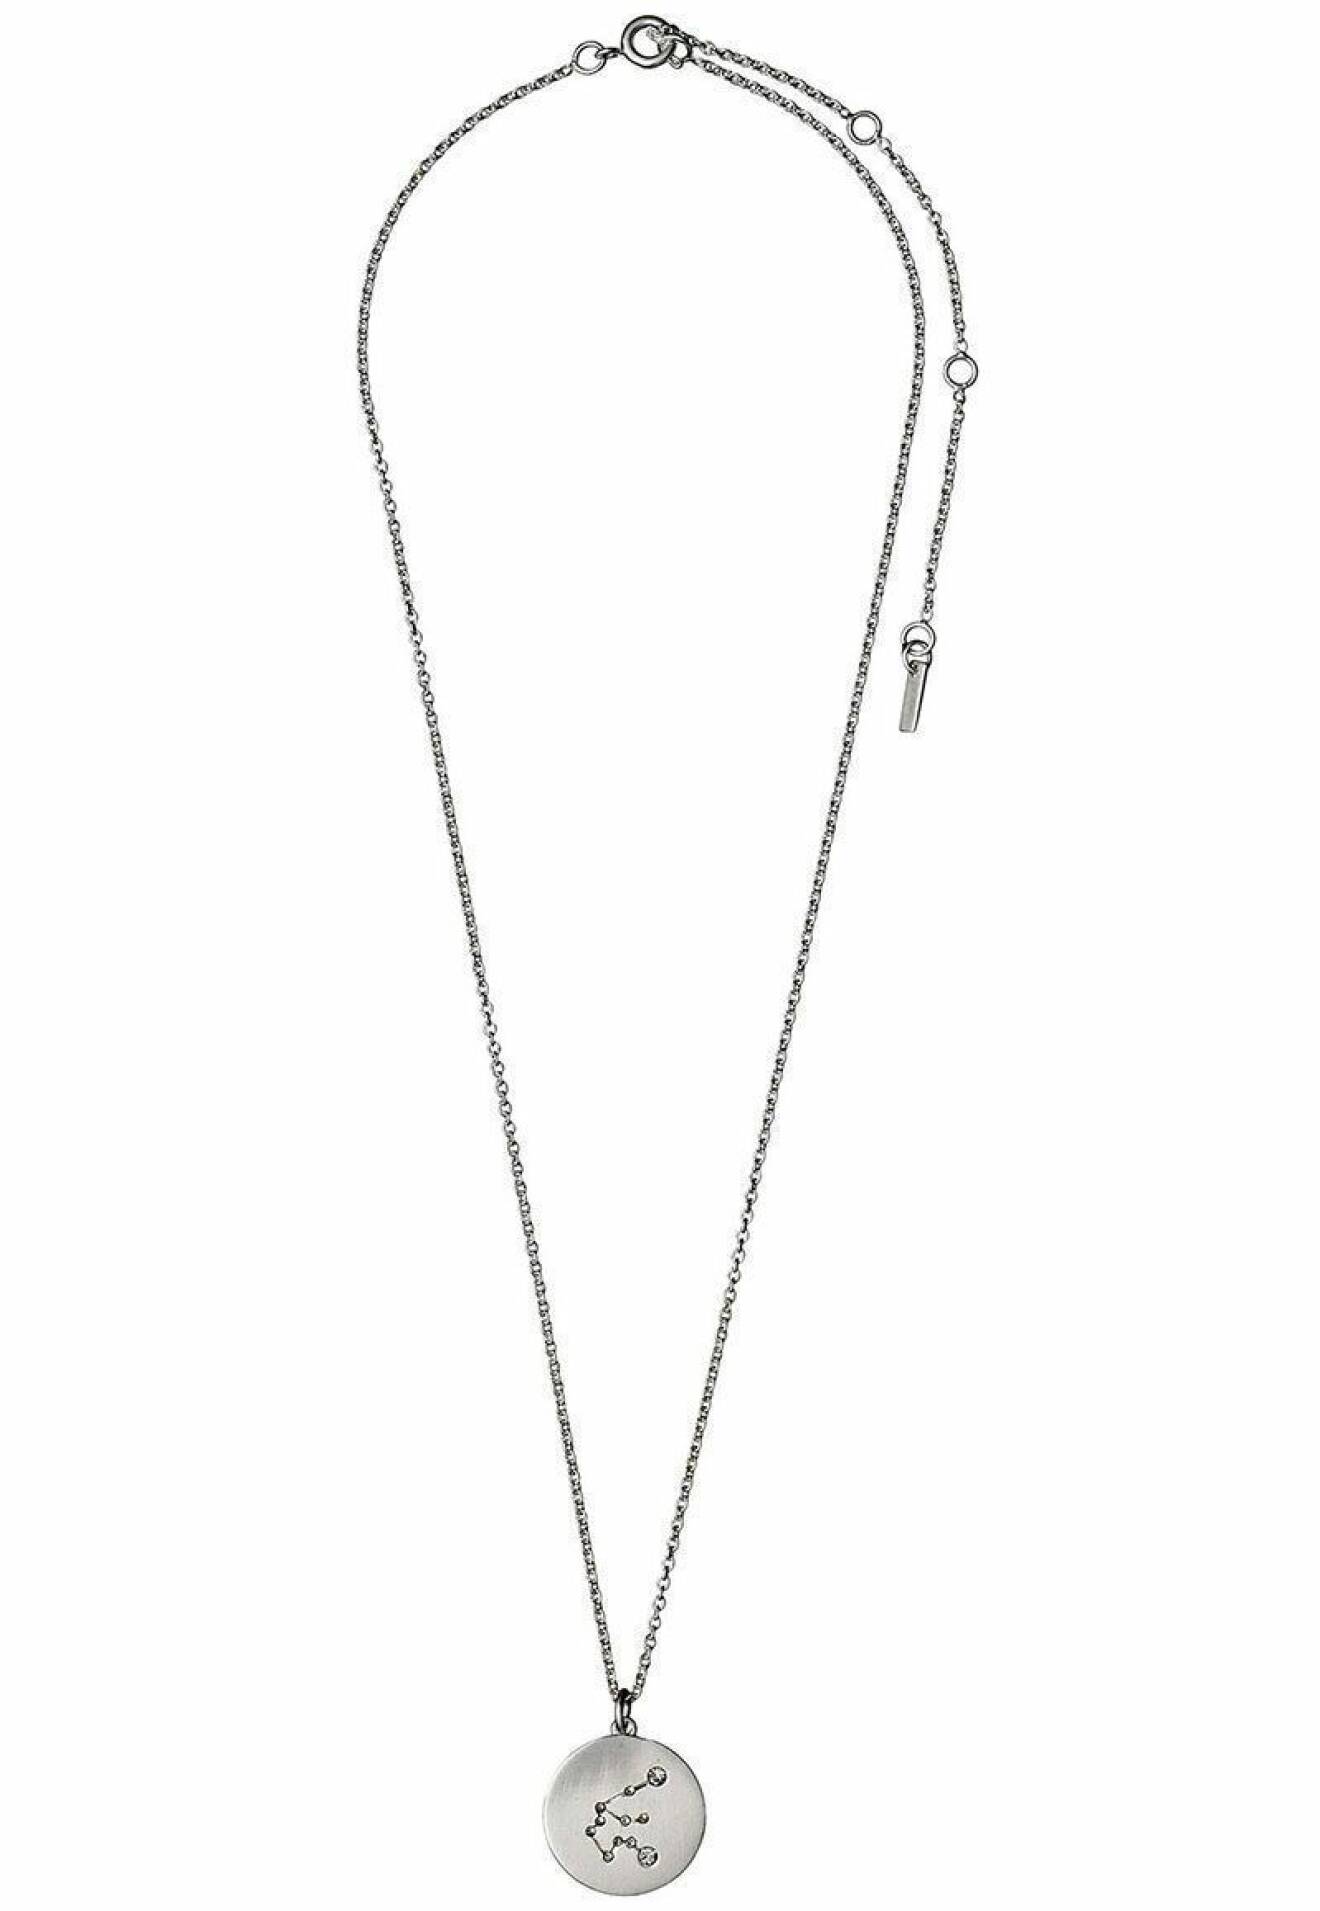 Halsband från Pilgrim med stjärntecken, vattumannen